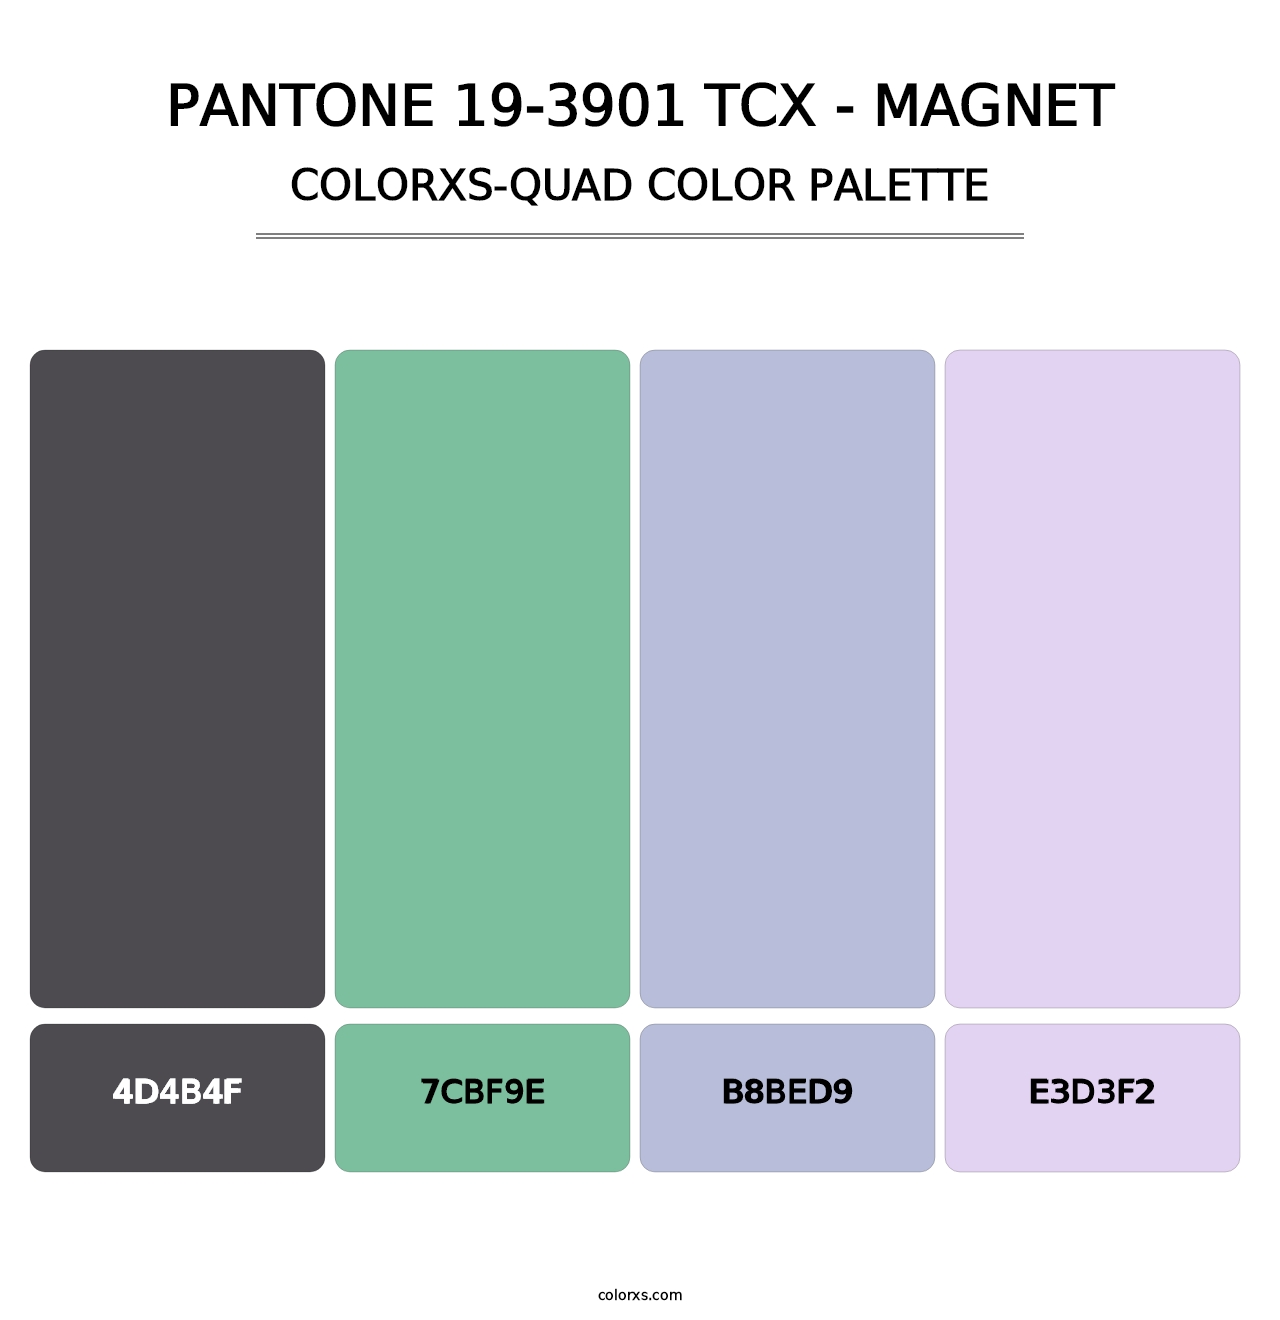 PANTONE 19-3901 TCX - Magnet - Colorxs Quad Palette